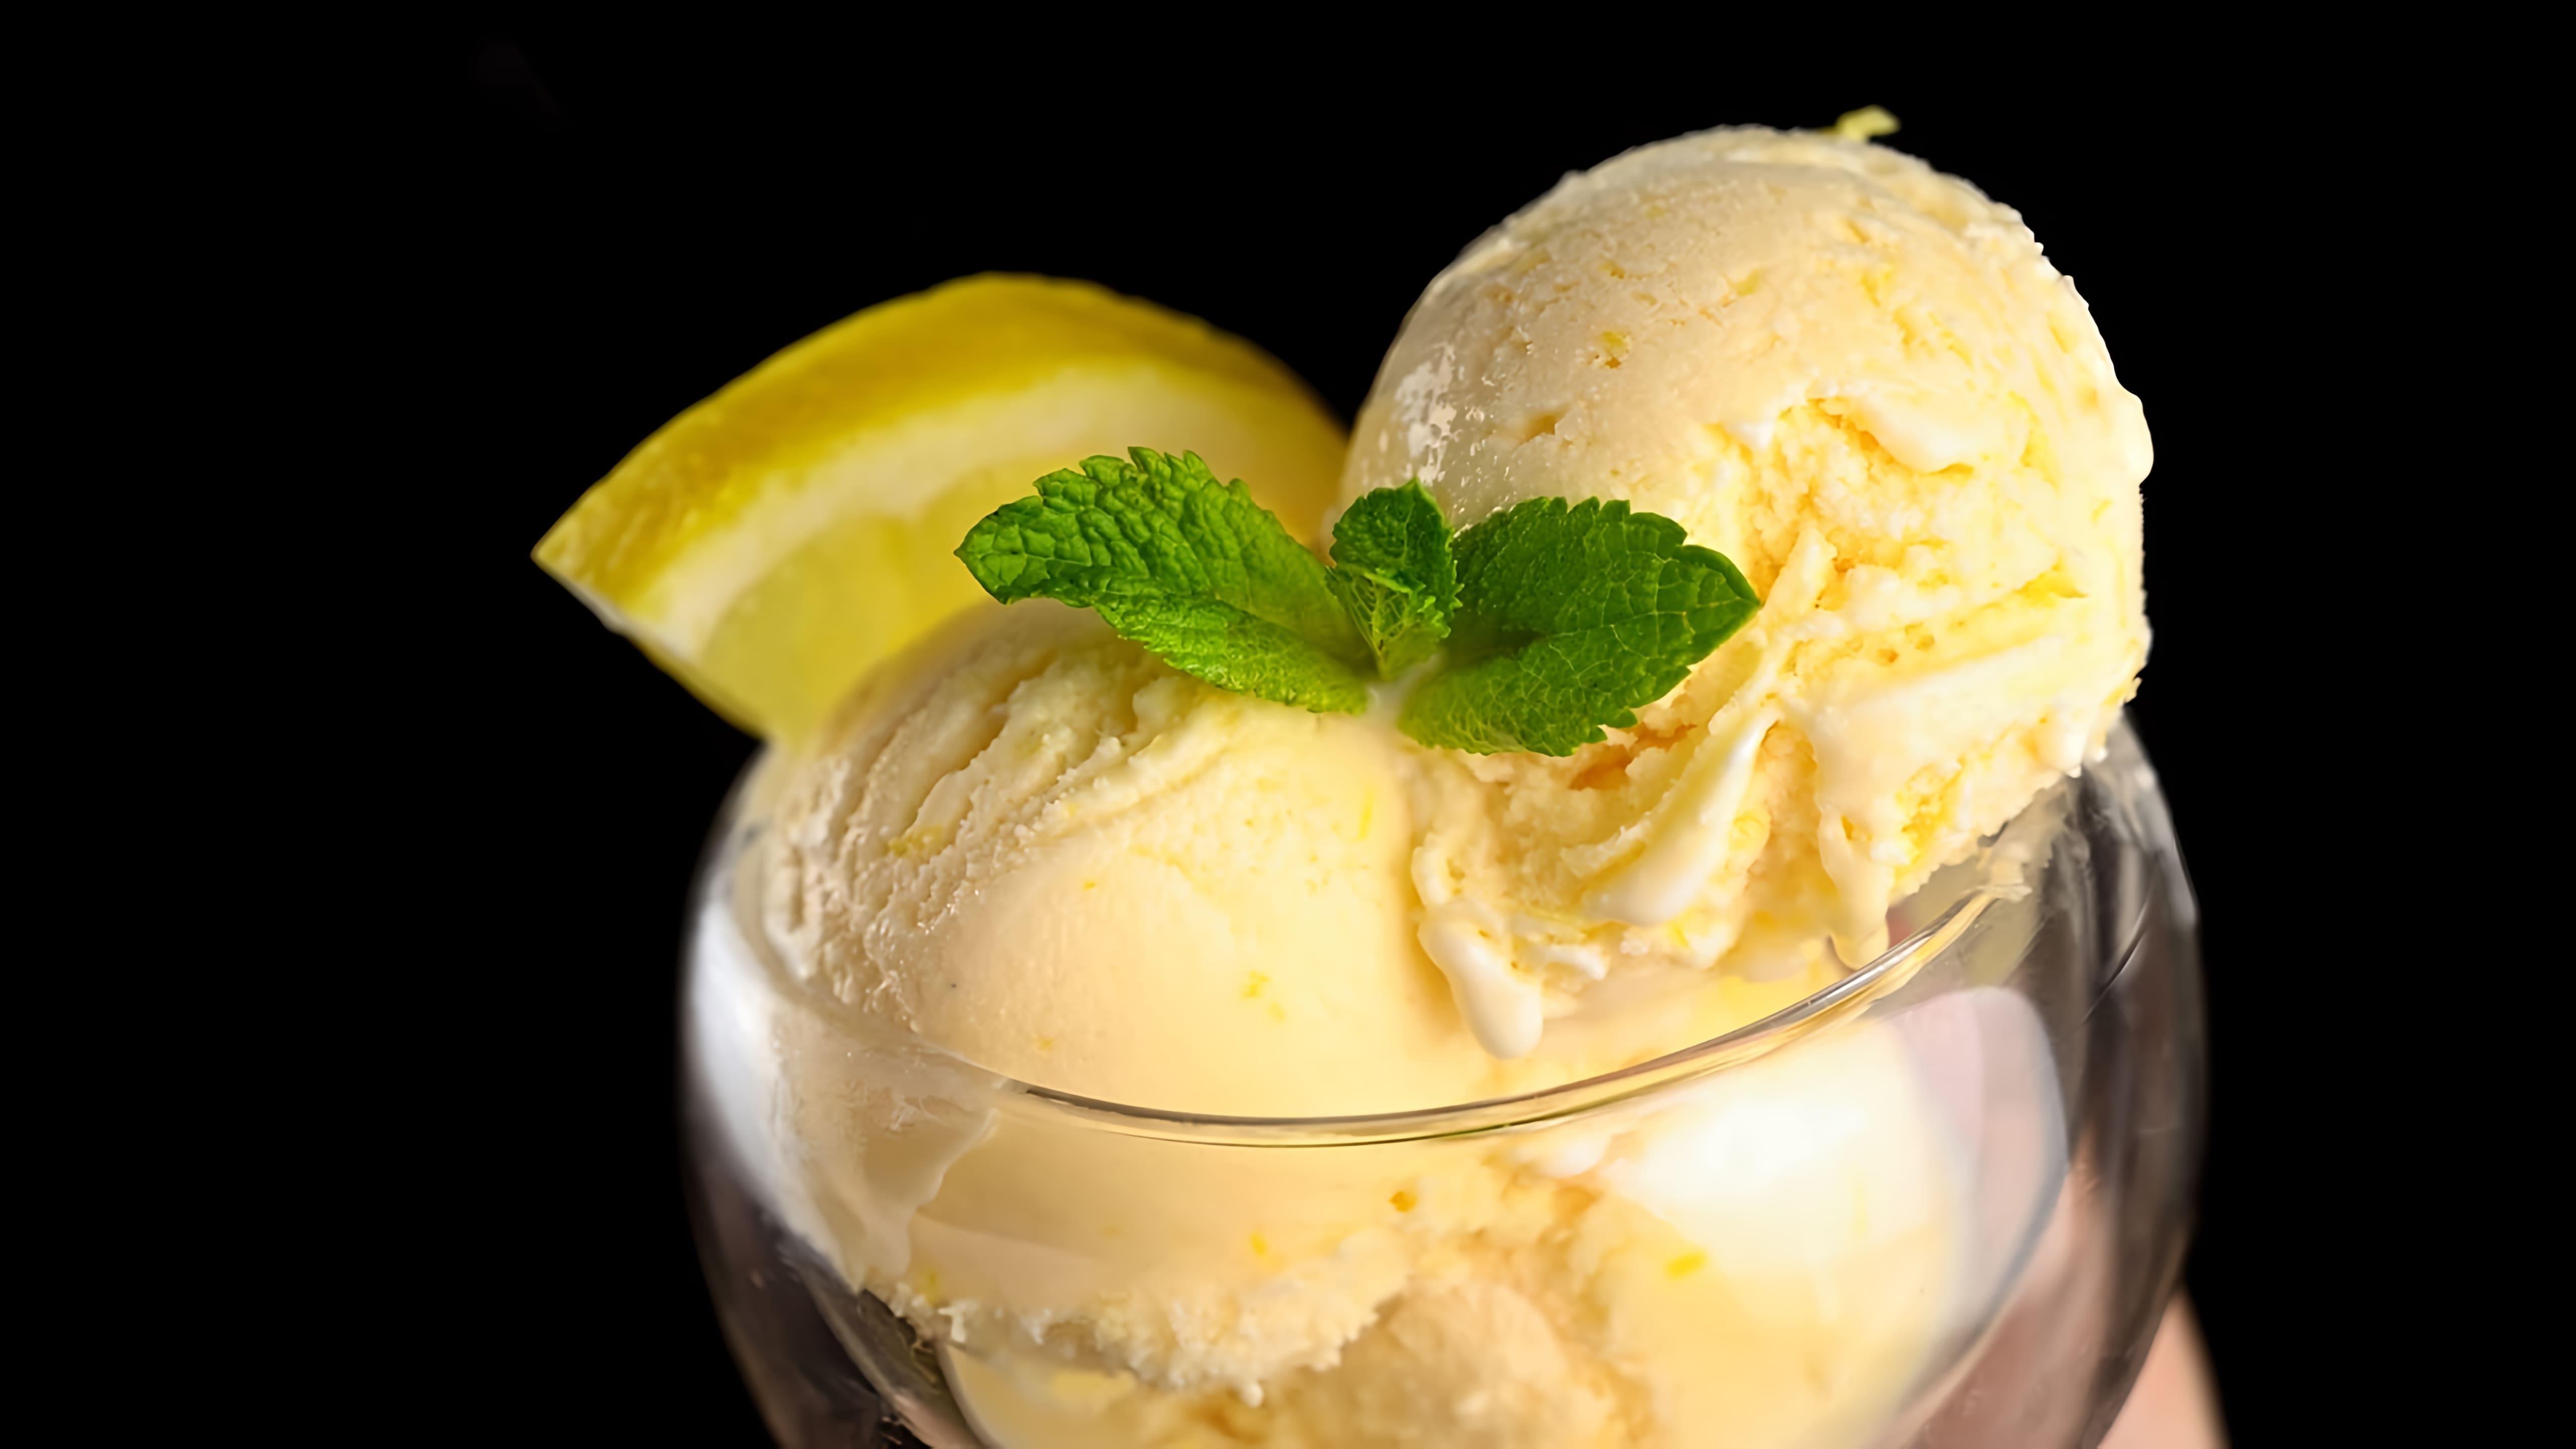 В этом видео демонстрируется рецепт приготовления нежного лимонного мороженого